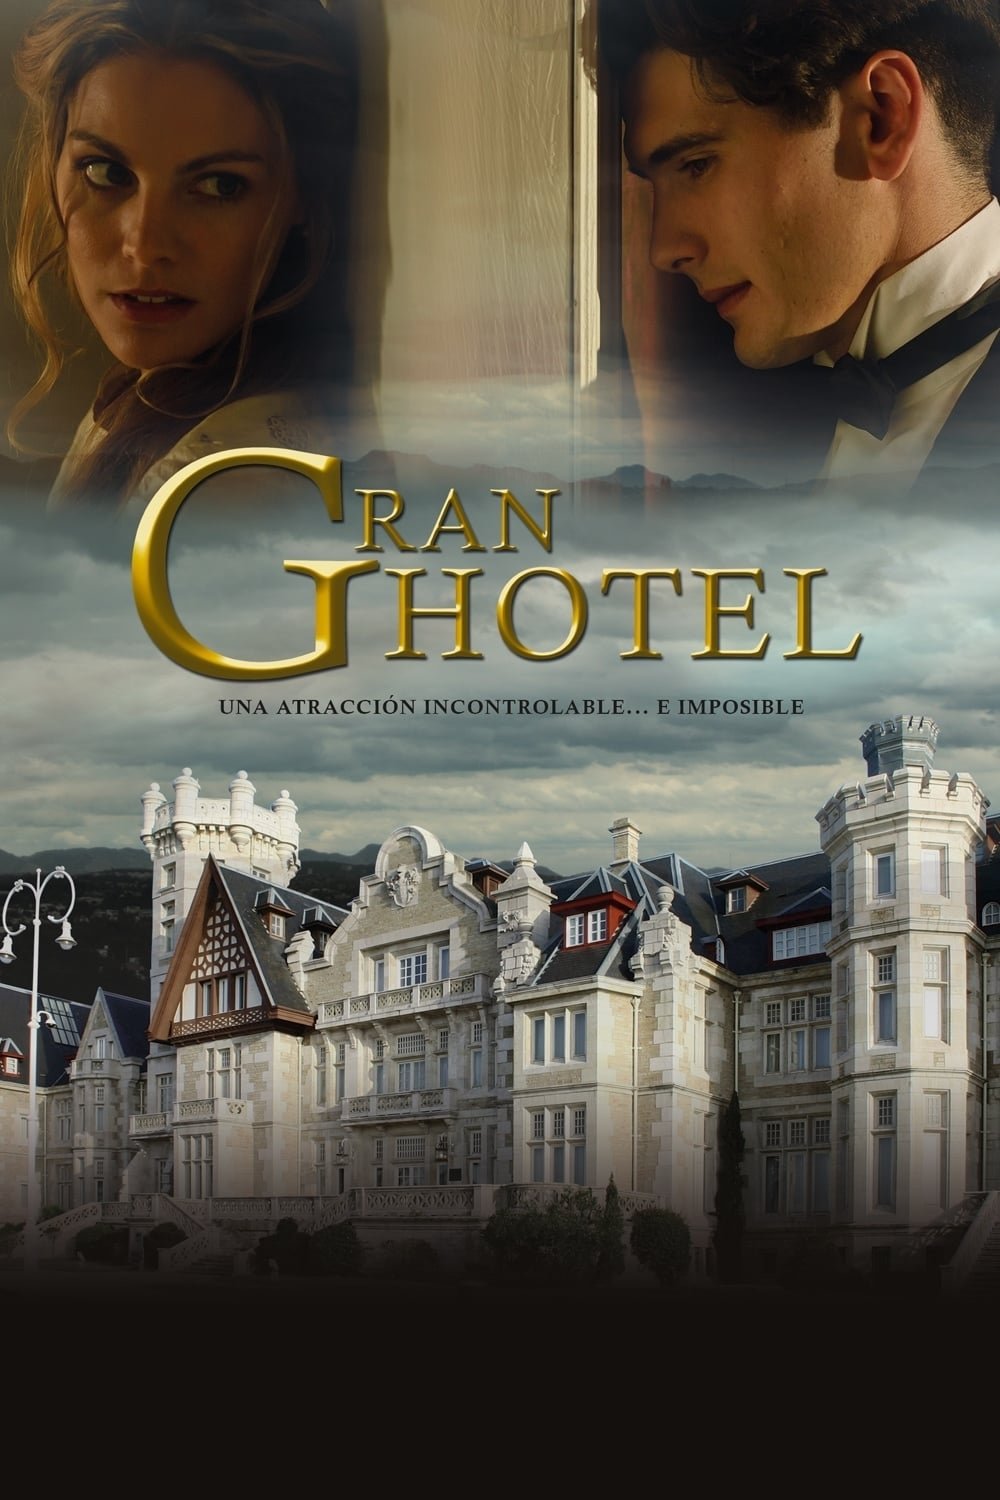 Grand hôtel (2011) - Saison 1